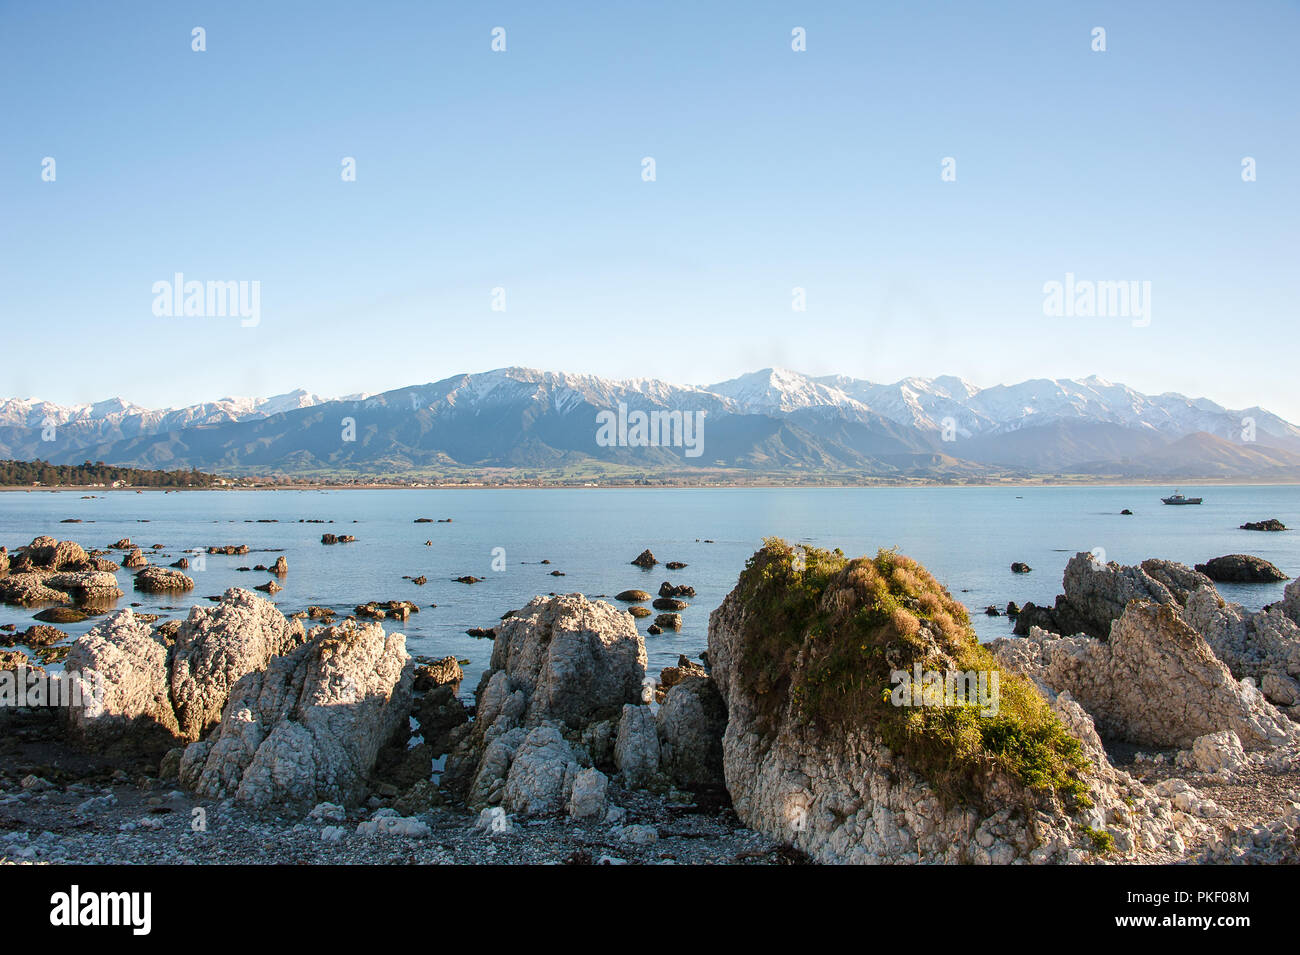 Paysage de Kaikoura, Canterbury, Nouvelle-Zélande : beau littoral rocheux, premier plan, vue de montagnes au loin. Banque D'Images